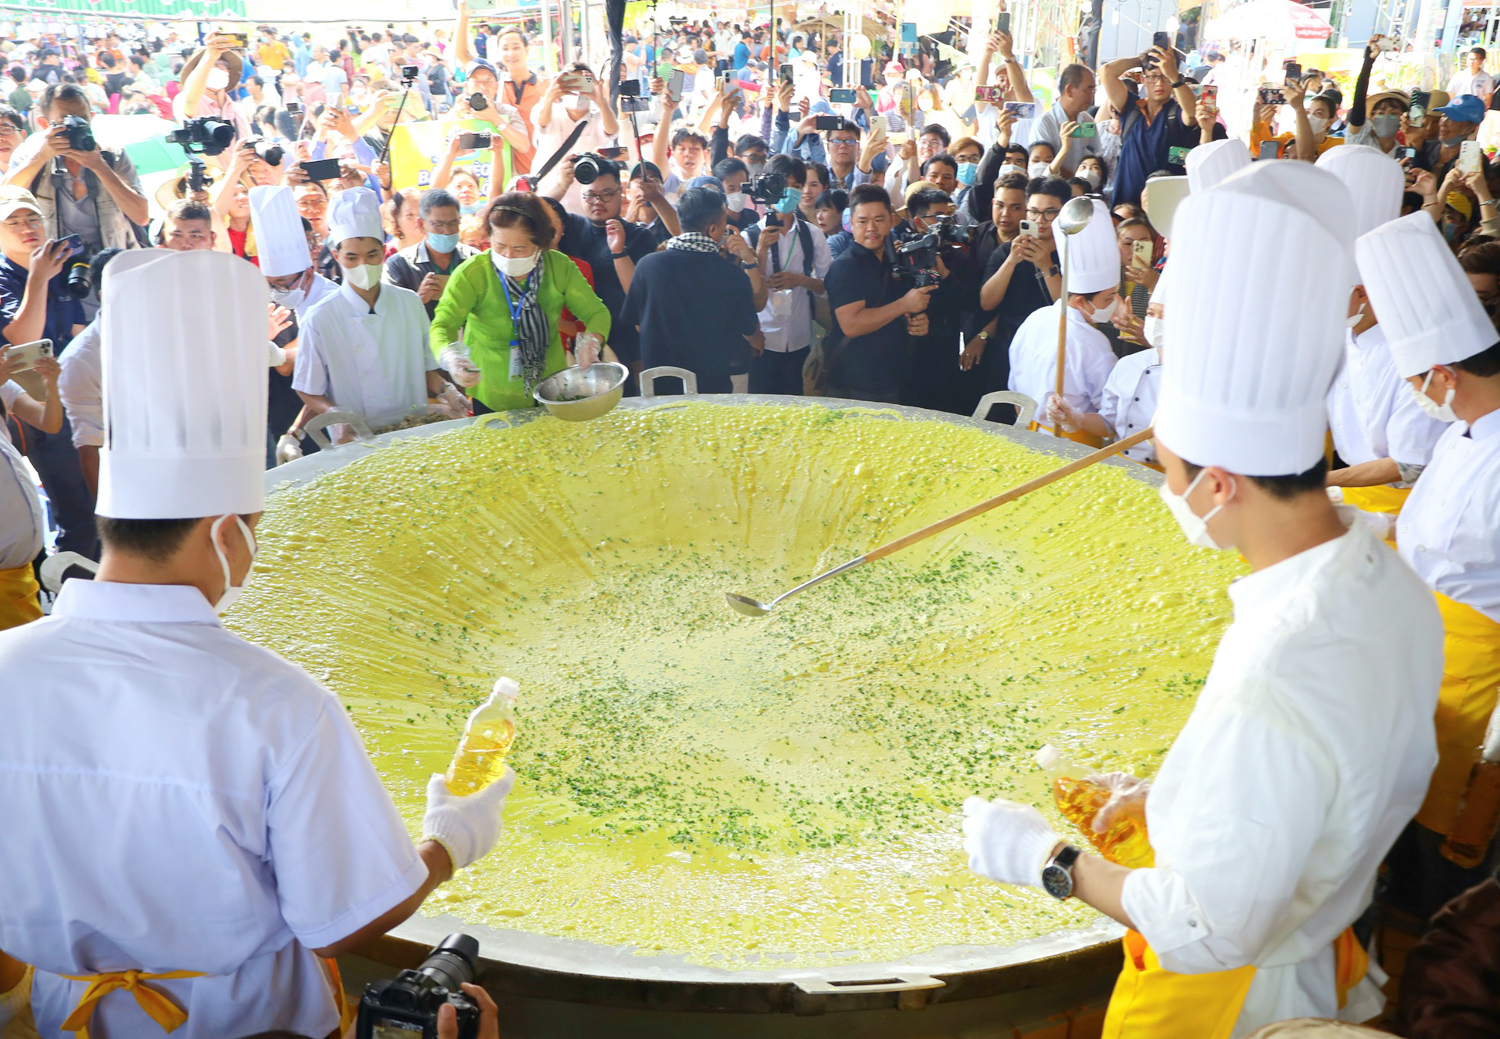 Hàng nghìn du khách đổ xô đến Cần Thơ xem bánh xèo siêu to 3 m - 3